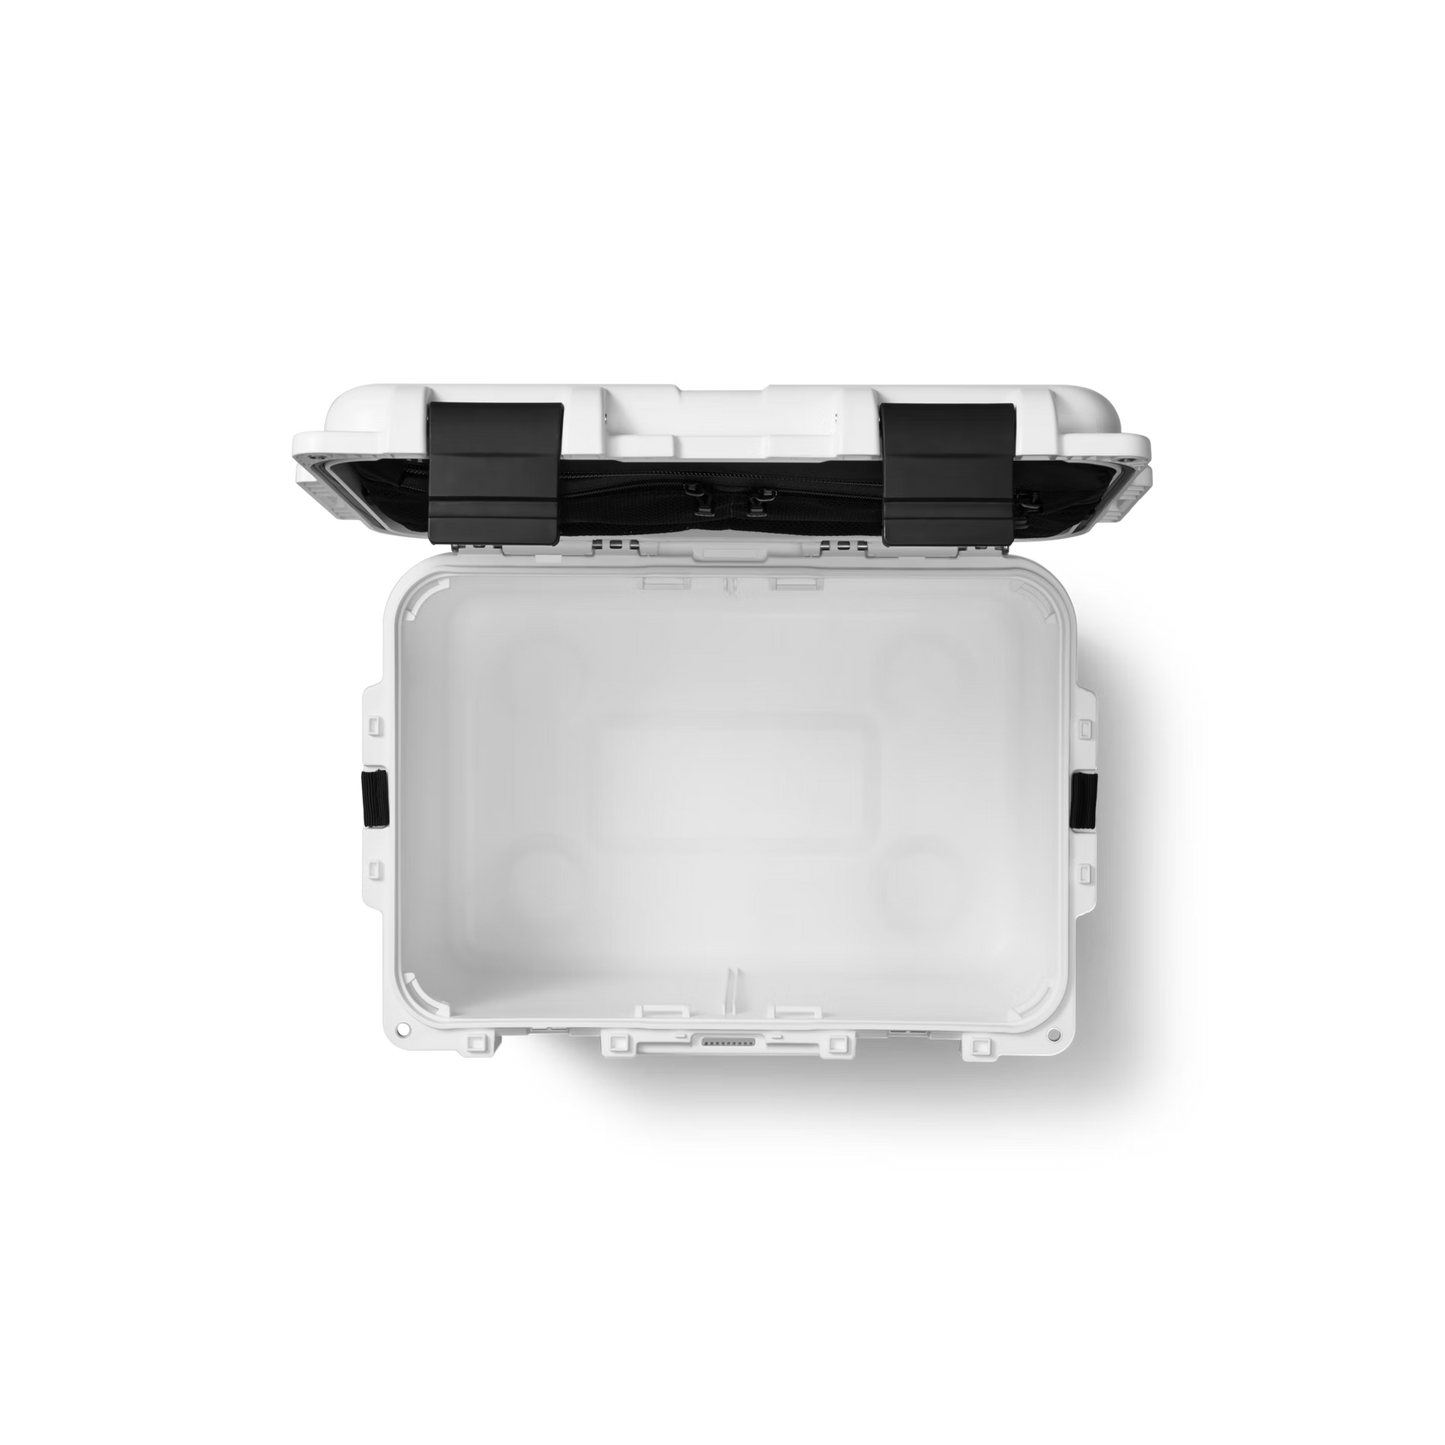 YETI LoadOut® GoBox 30 Gear Case White